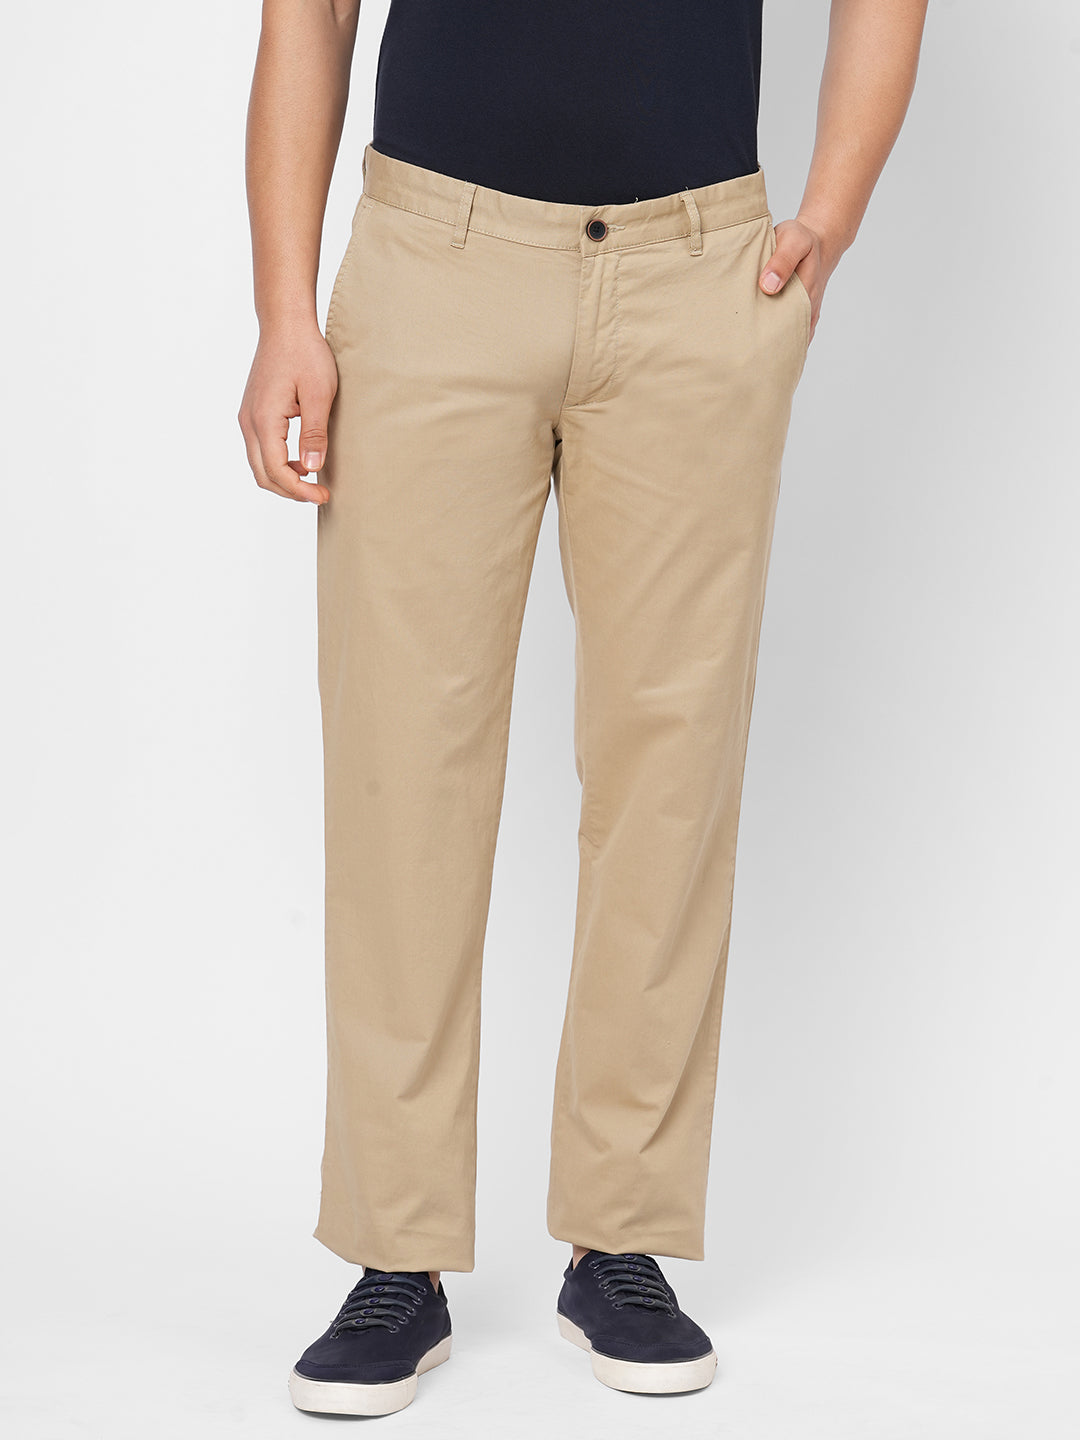 Buy COLOR PLUS Solid Cotton Lycra Slim Fit Men's Casual Trousers